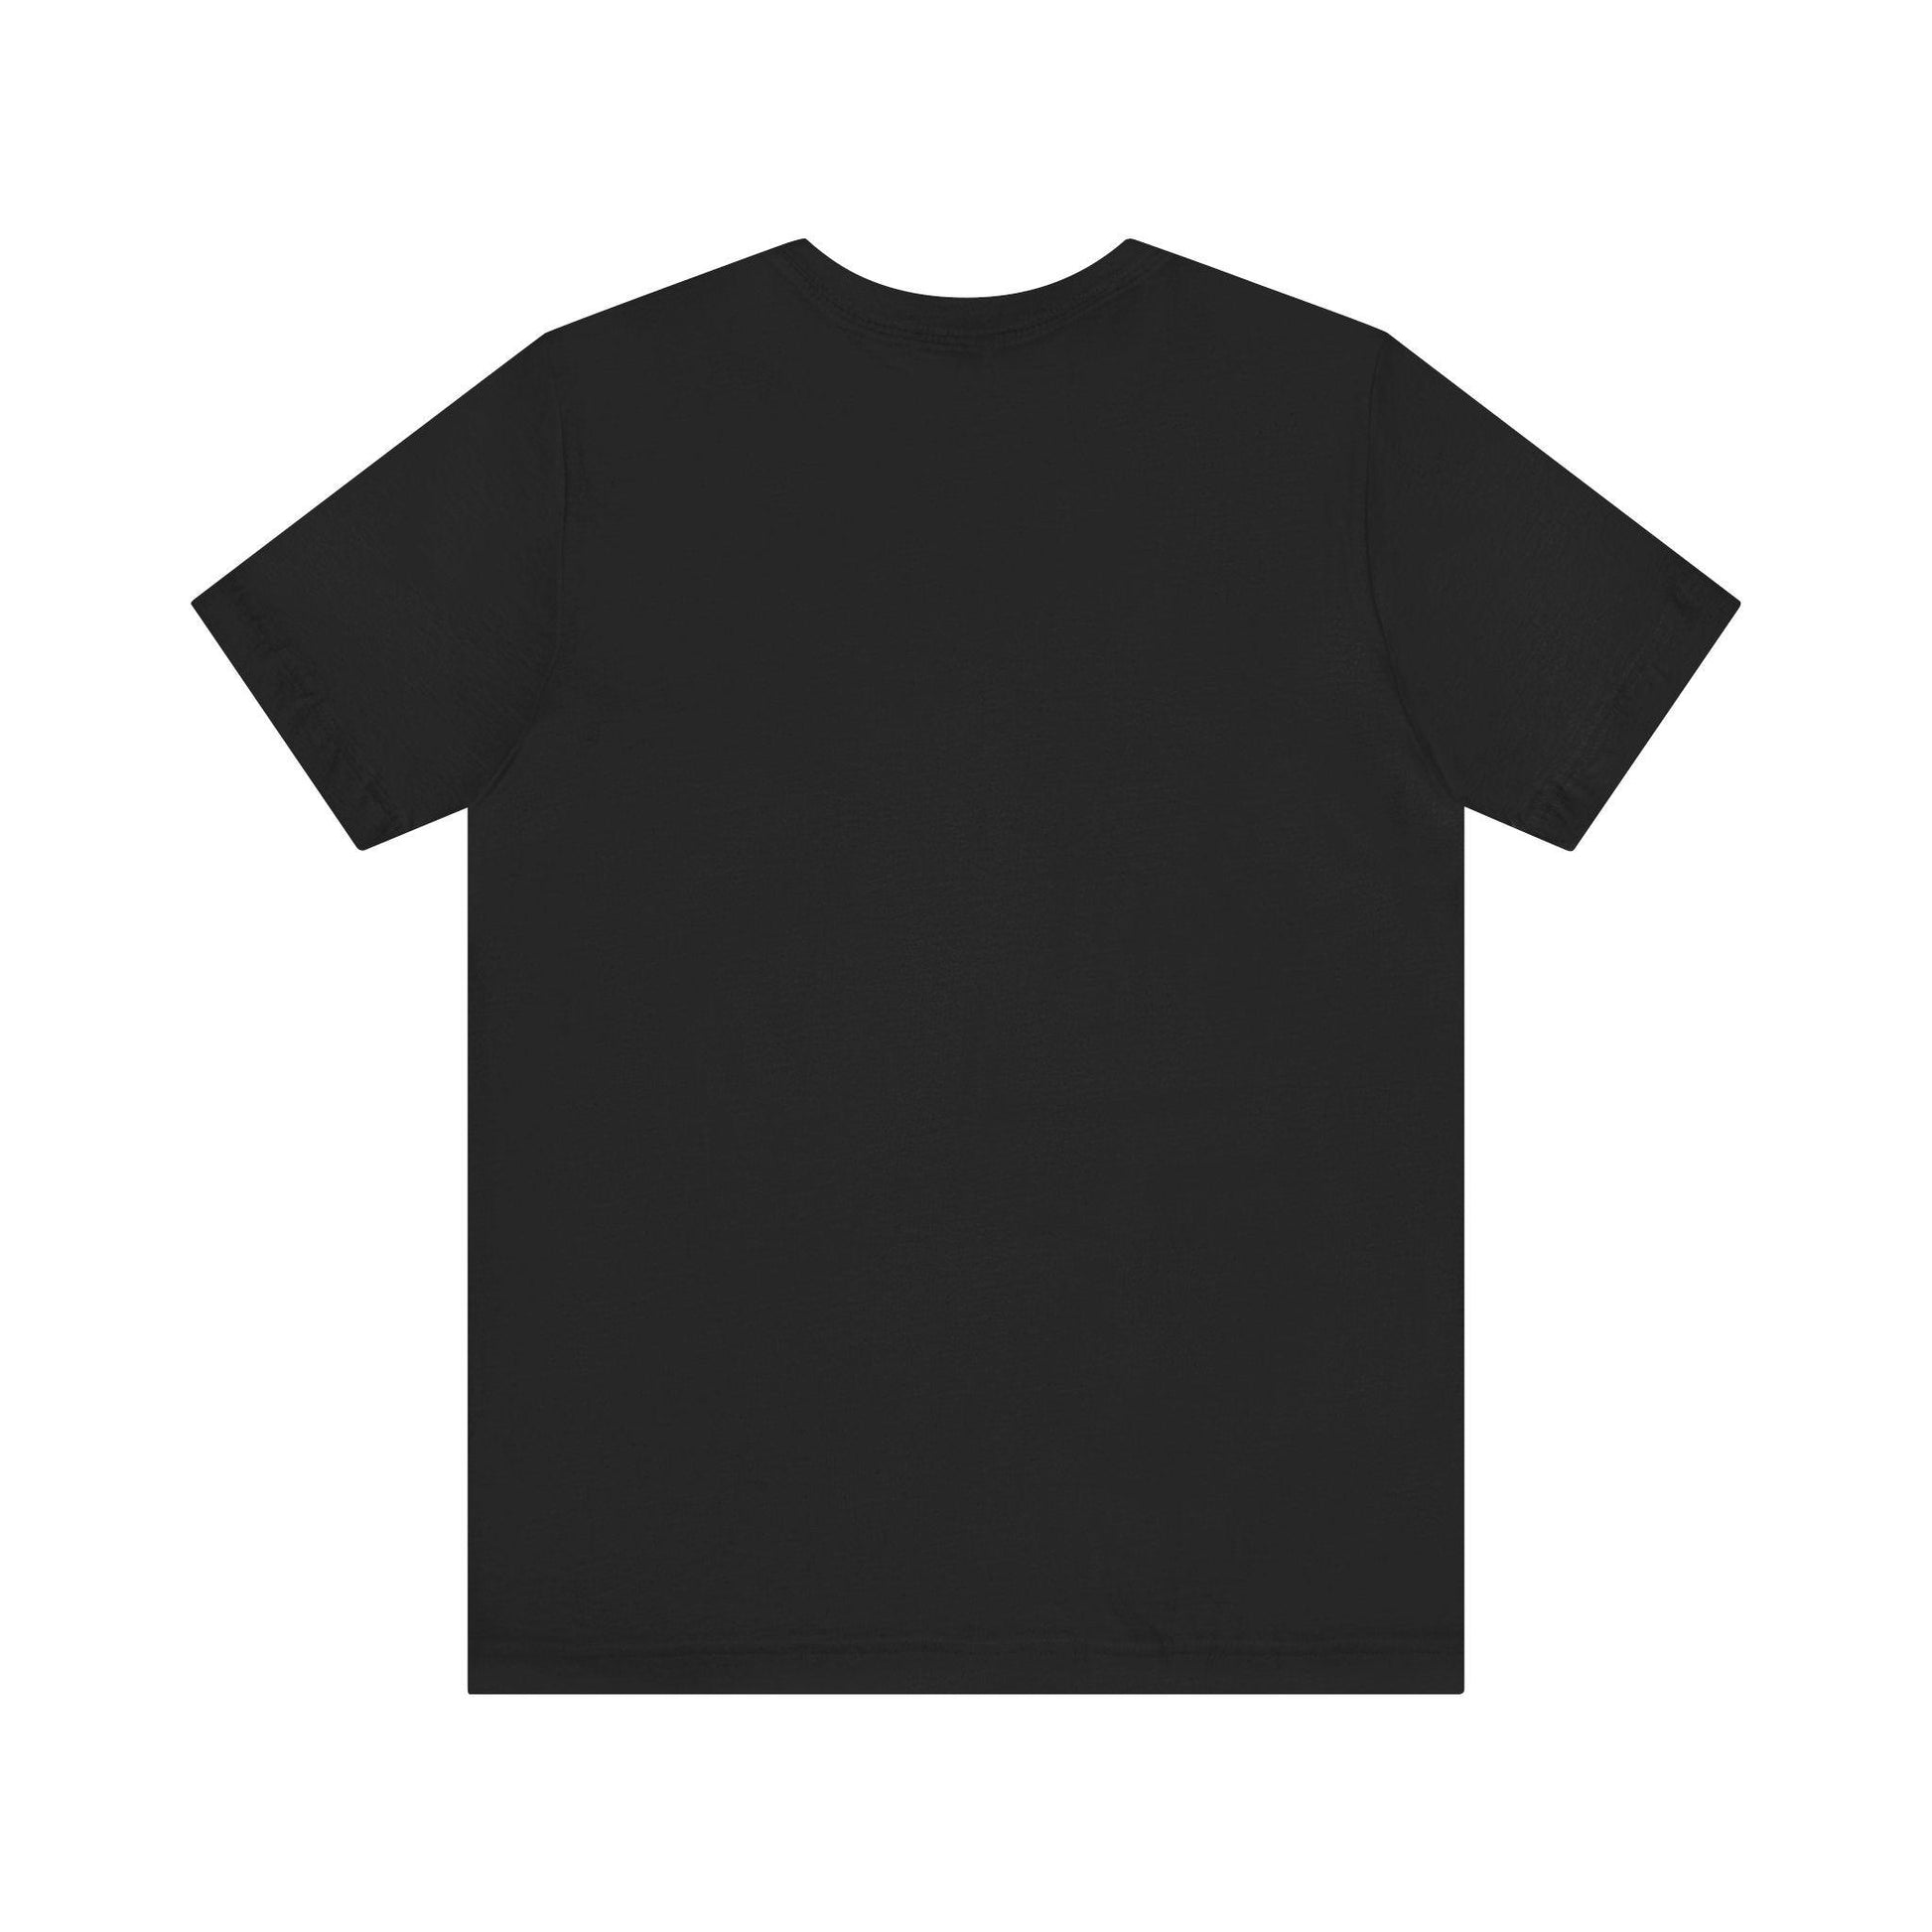 To the moon and back - Astrodog - Dog T-shirt - Soulshinecreators - Unisex Jersey Short Sleeve Tee - US - Soulshinecreators